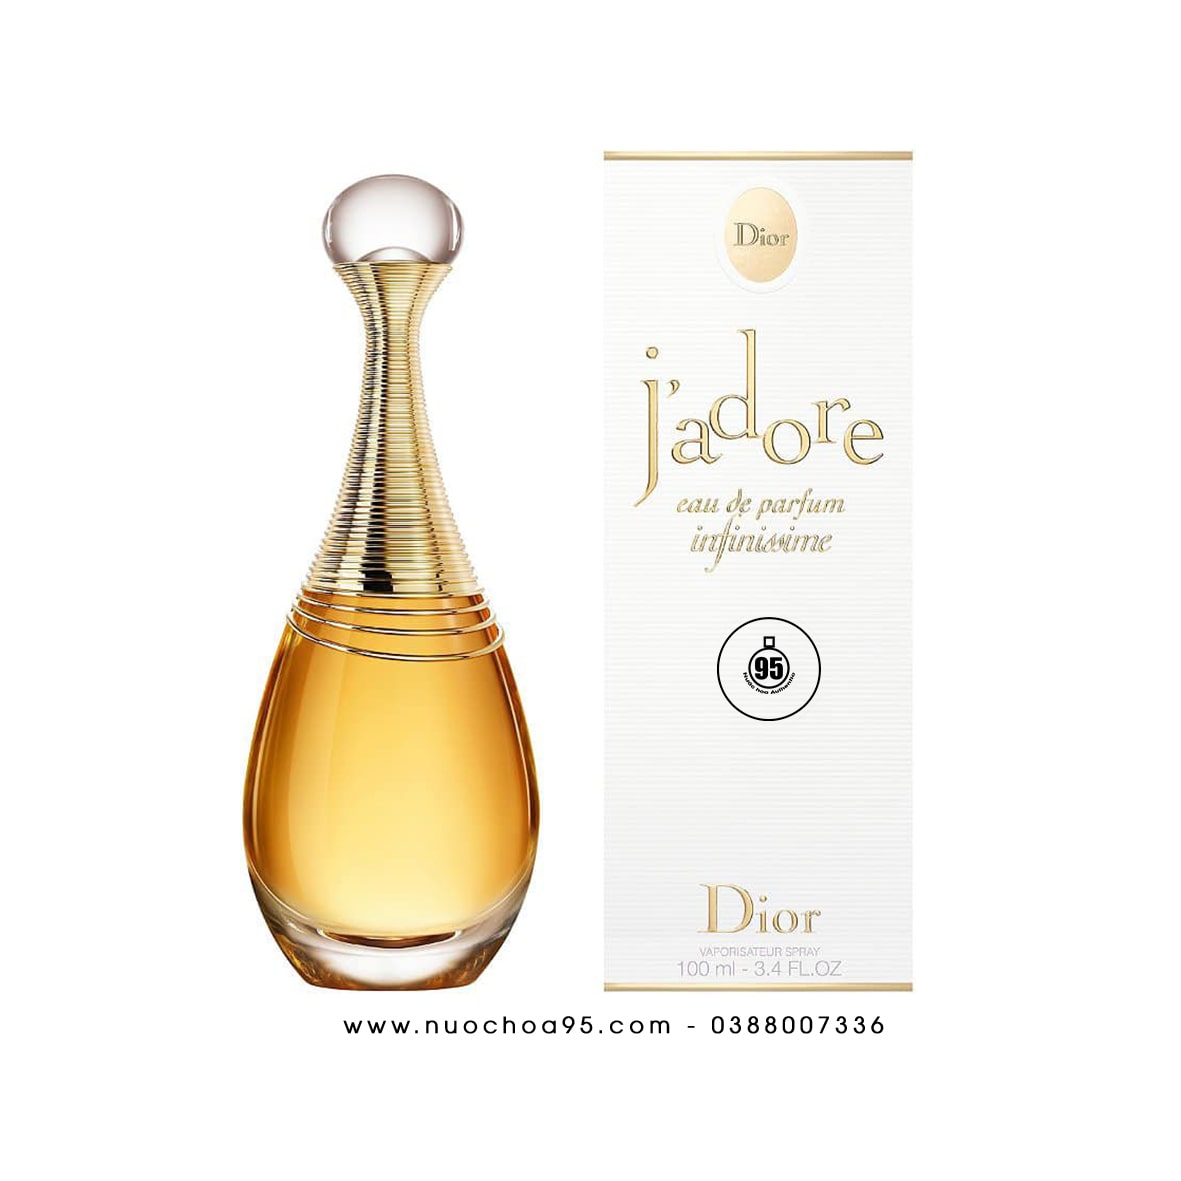 Nước hoa Dior JAdore Eau De Parfum Infinissime của hãng Christian Dior